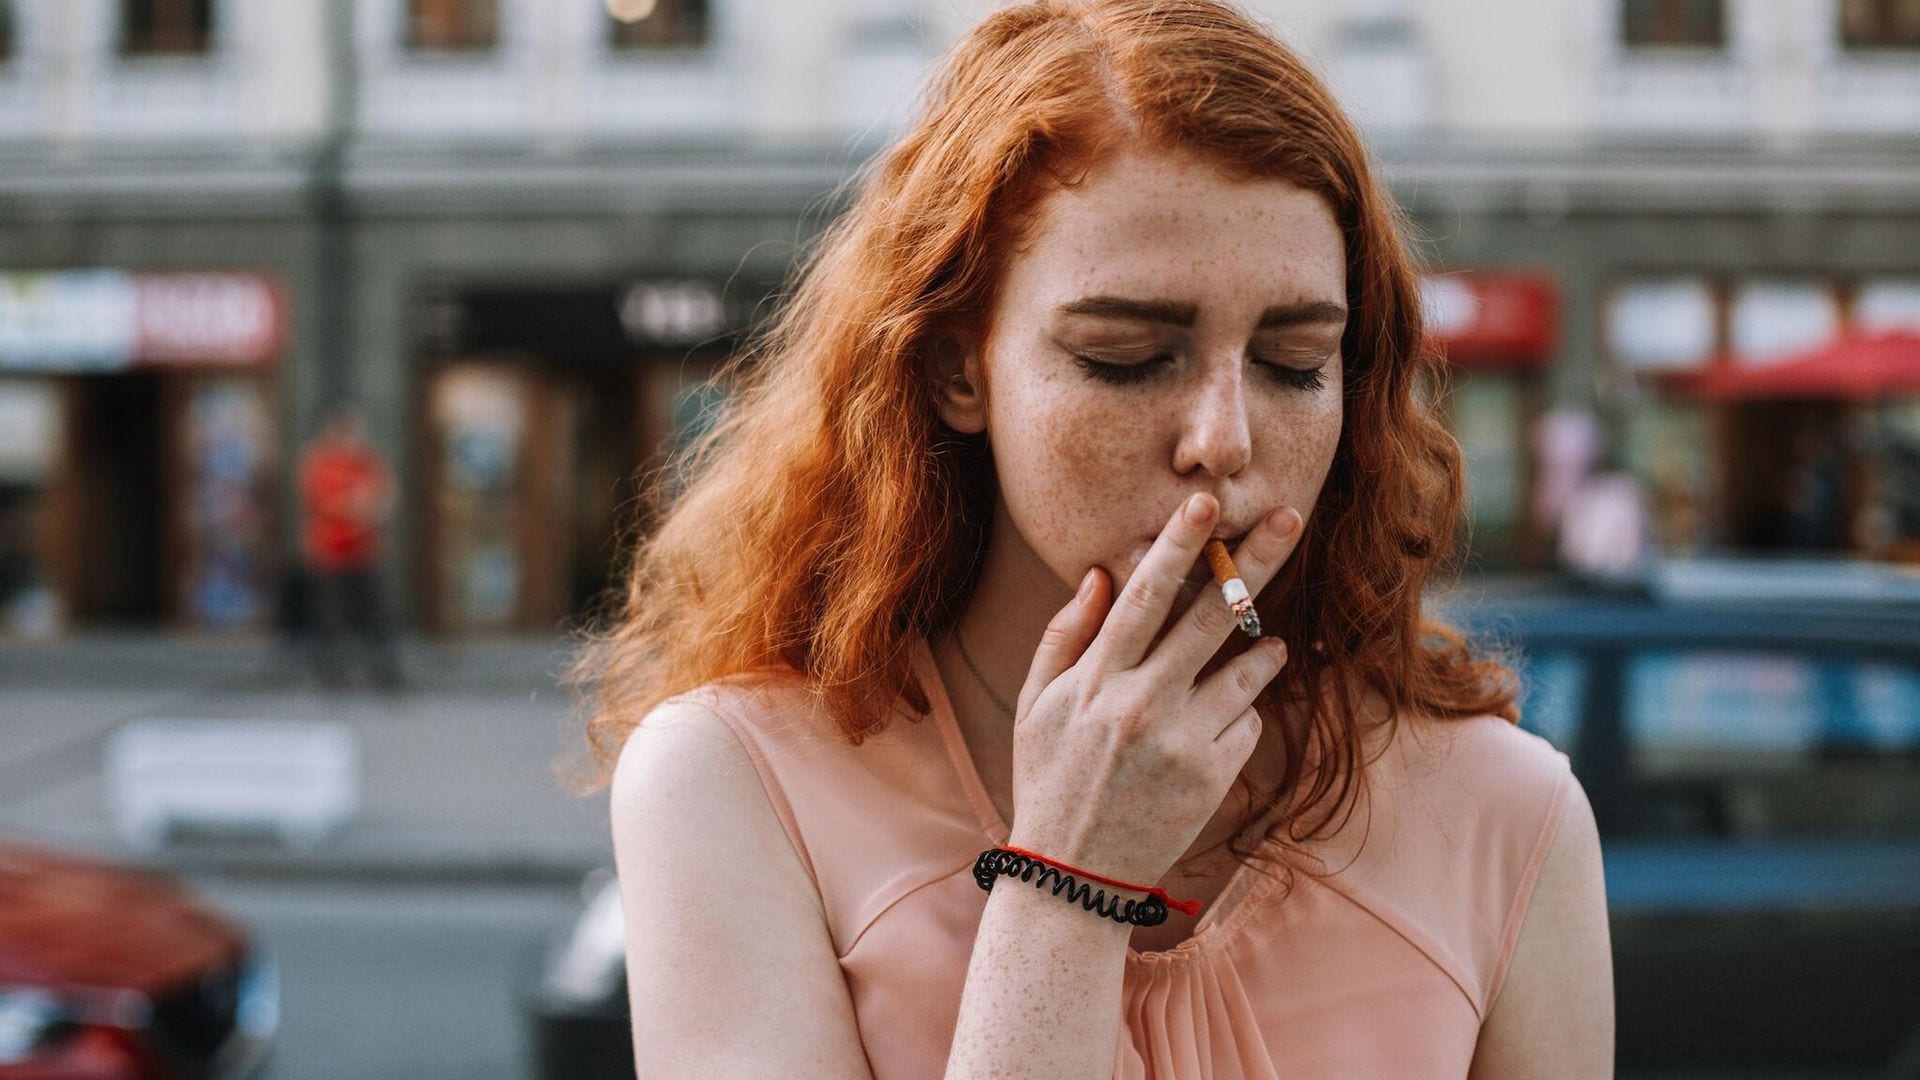 Empezar a fumar en la adolescencia puede afectar al desarrollo neurológico